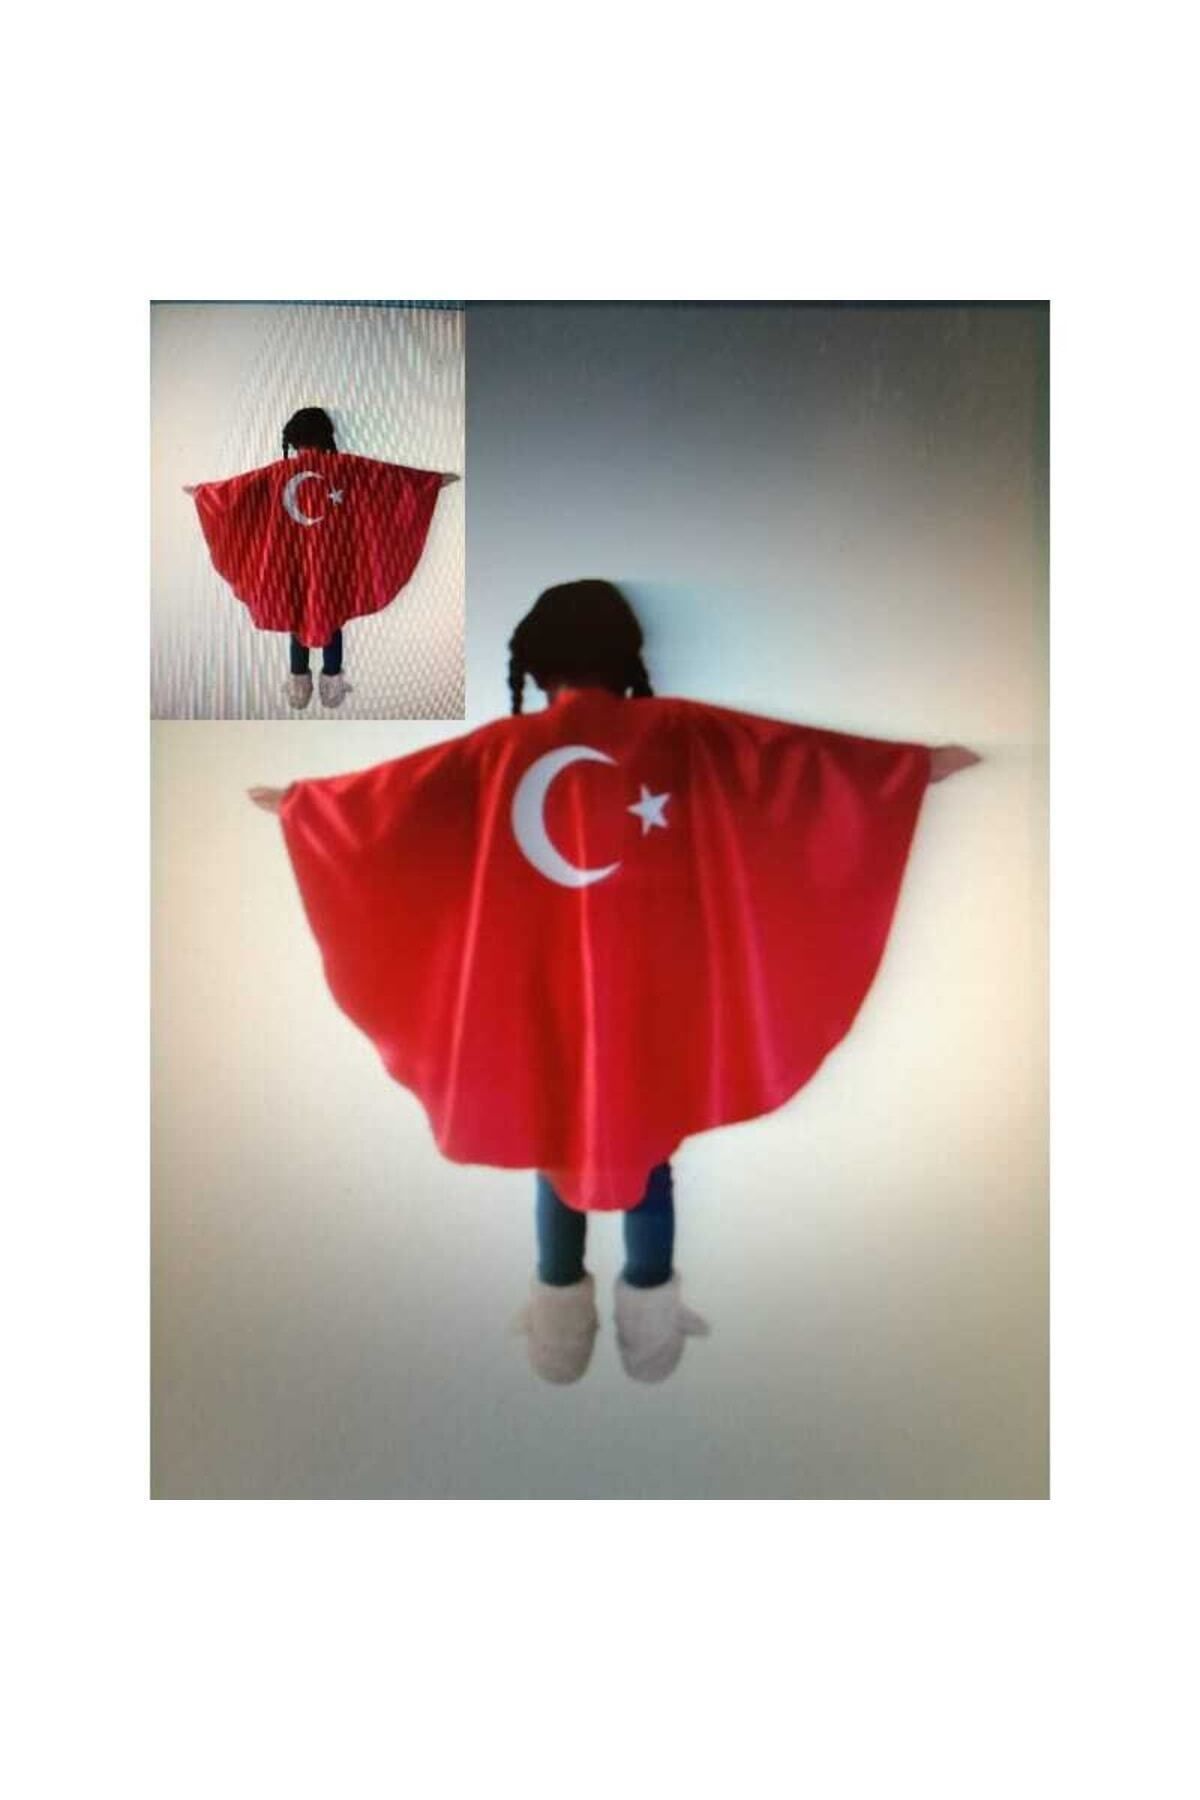 KIRKLAR TEKSTİL Türk Bayrak Pelerin Kostüm-kırmızı Ay Yıldızlı Bayrak Pelerin